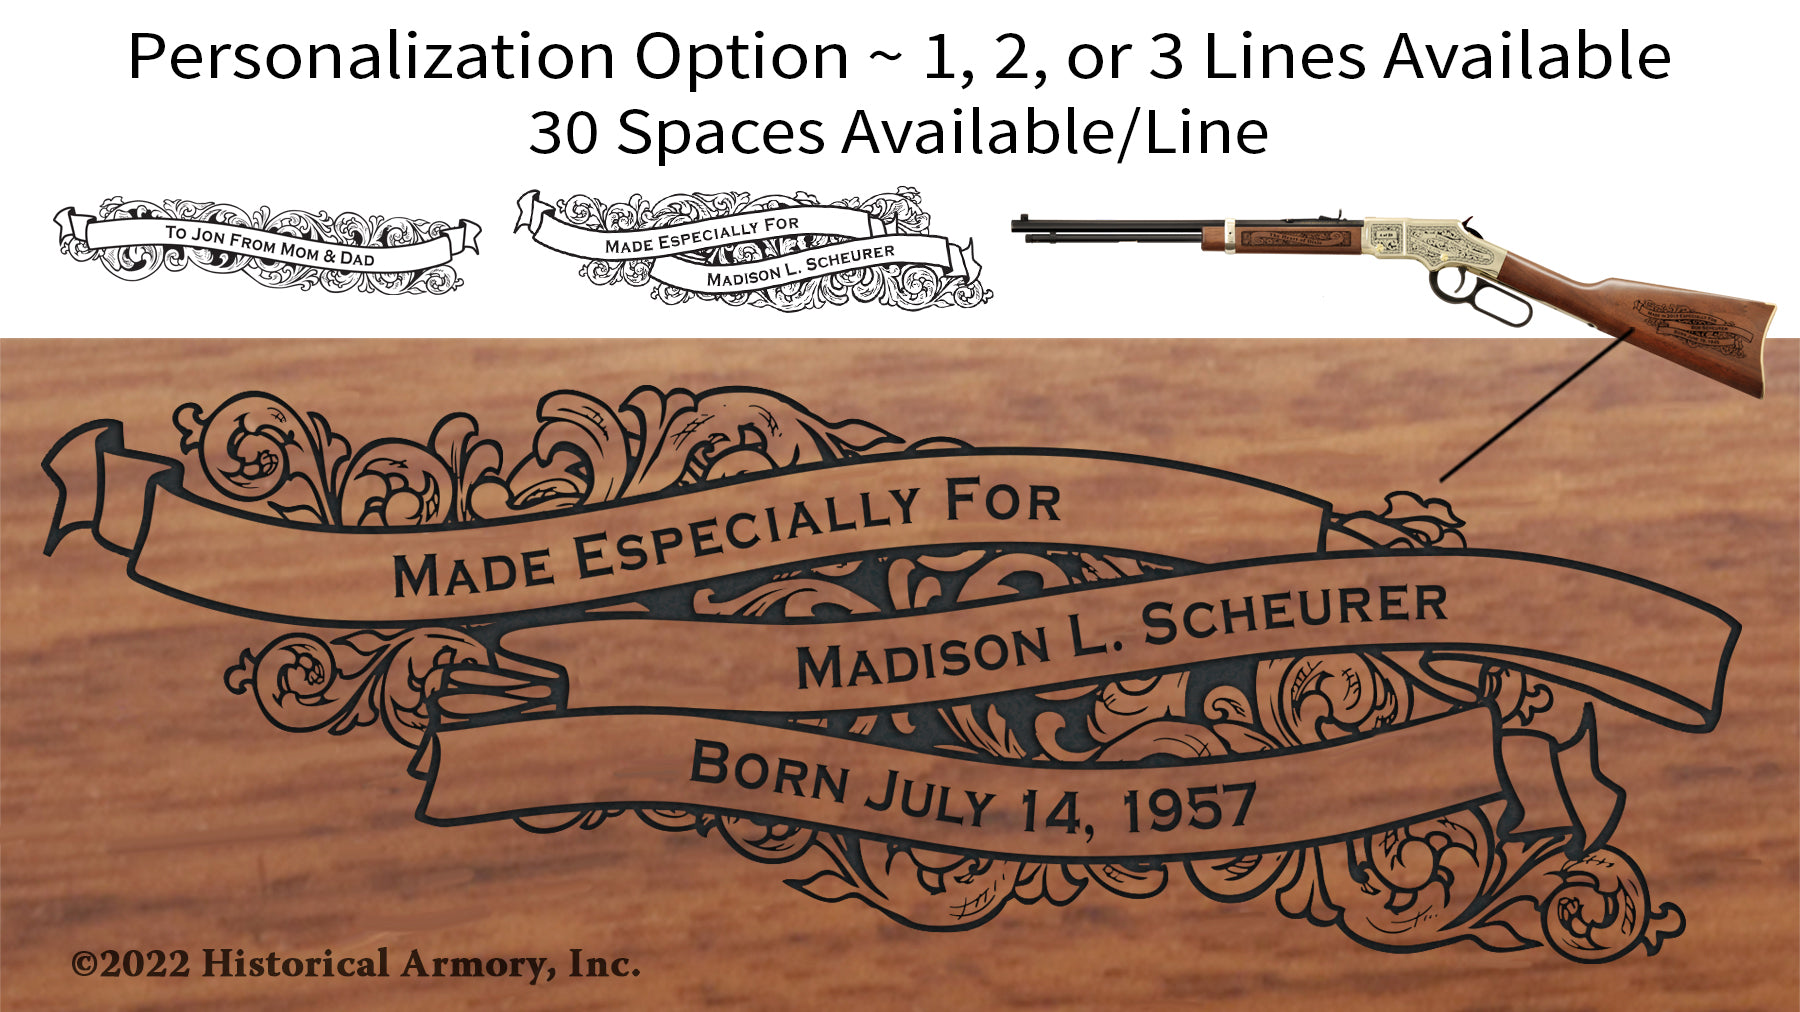 Nodaway County Missouri Engraved Rifle Personalization